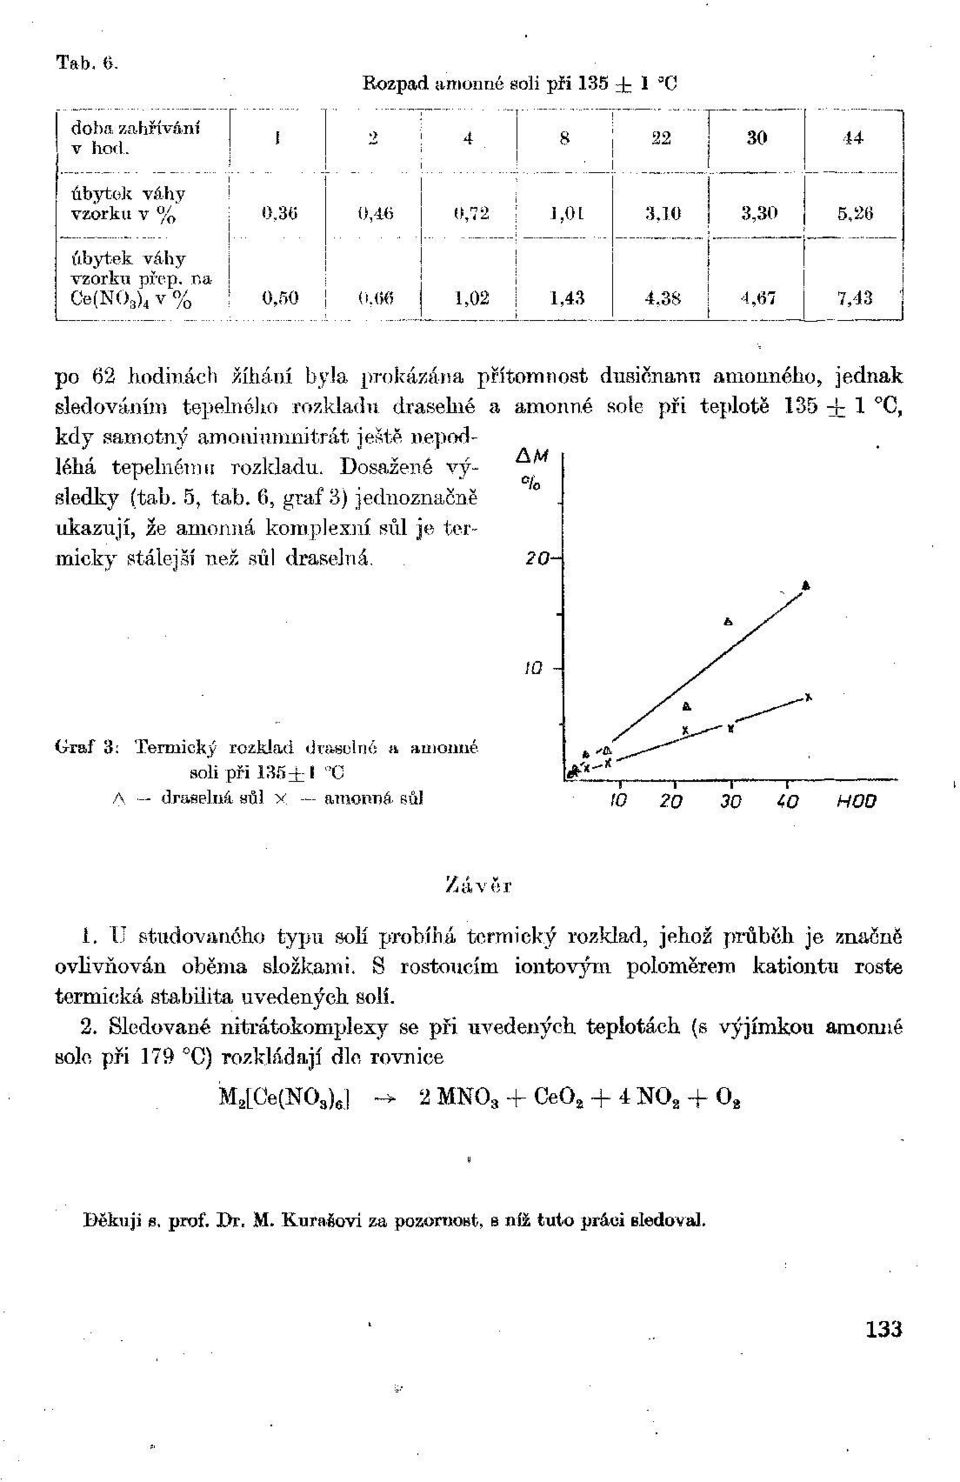 amoniumnitrát ještě nepodléhá tepelnému rozkladu. Dosažené výsledky (tab. 5, tab. 6, graf 3) jednoznačně ukazují, že amonná komplexní sůl je termicky stálejší než sůl draselná.